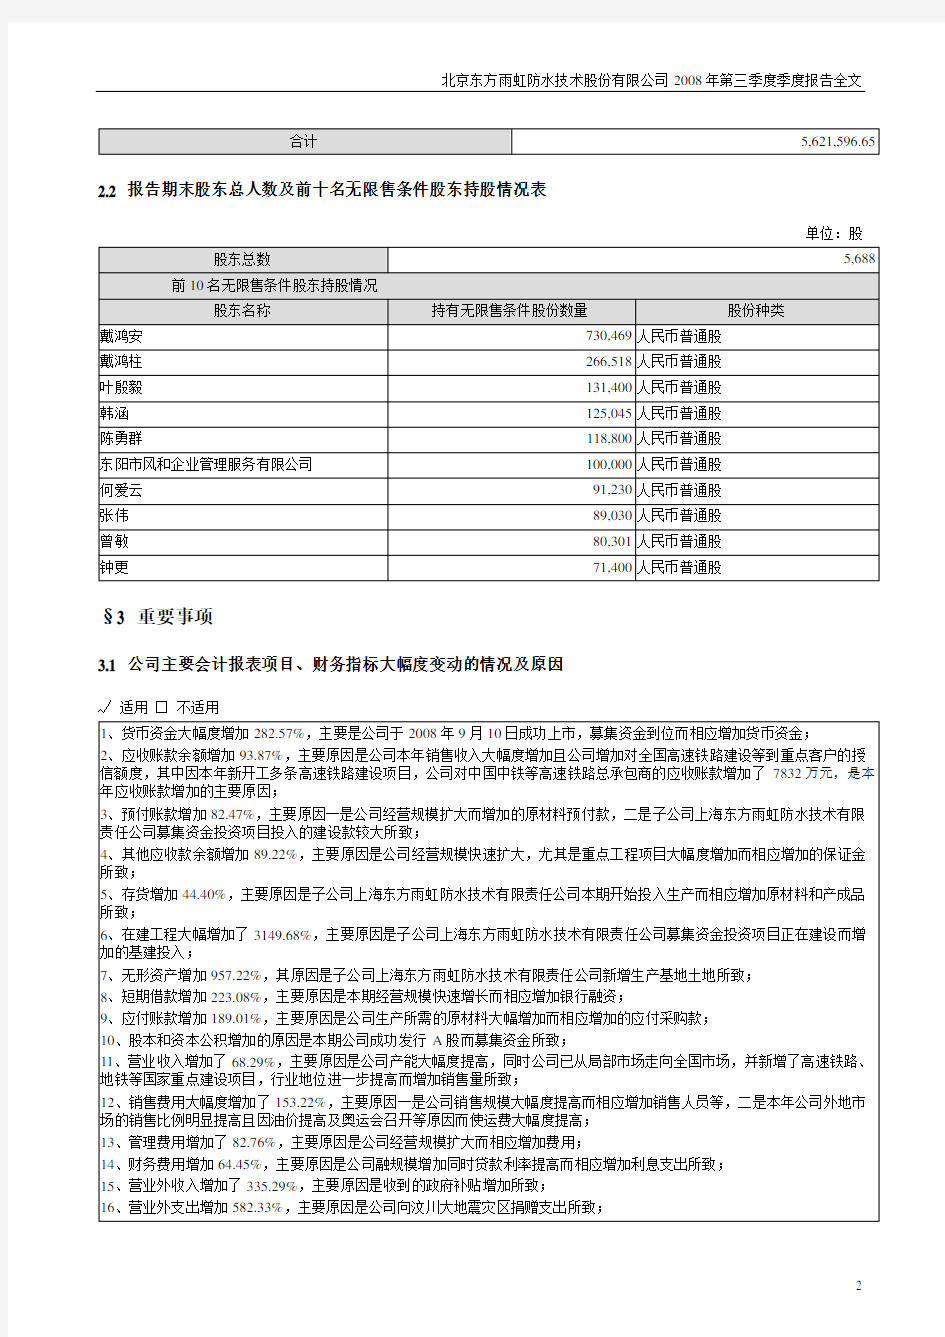 北京东方雨虹防水技术股份有限公司2008年第三季度季度报告全文